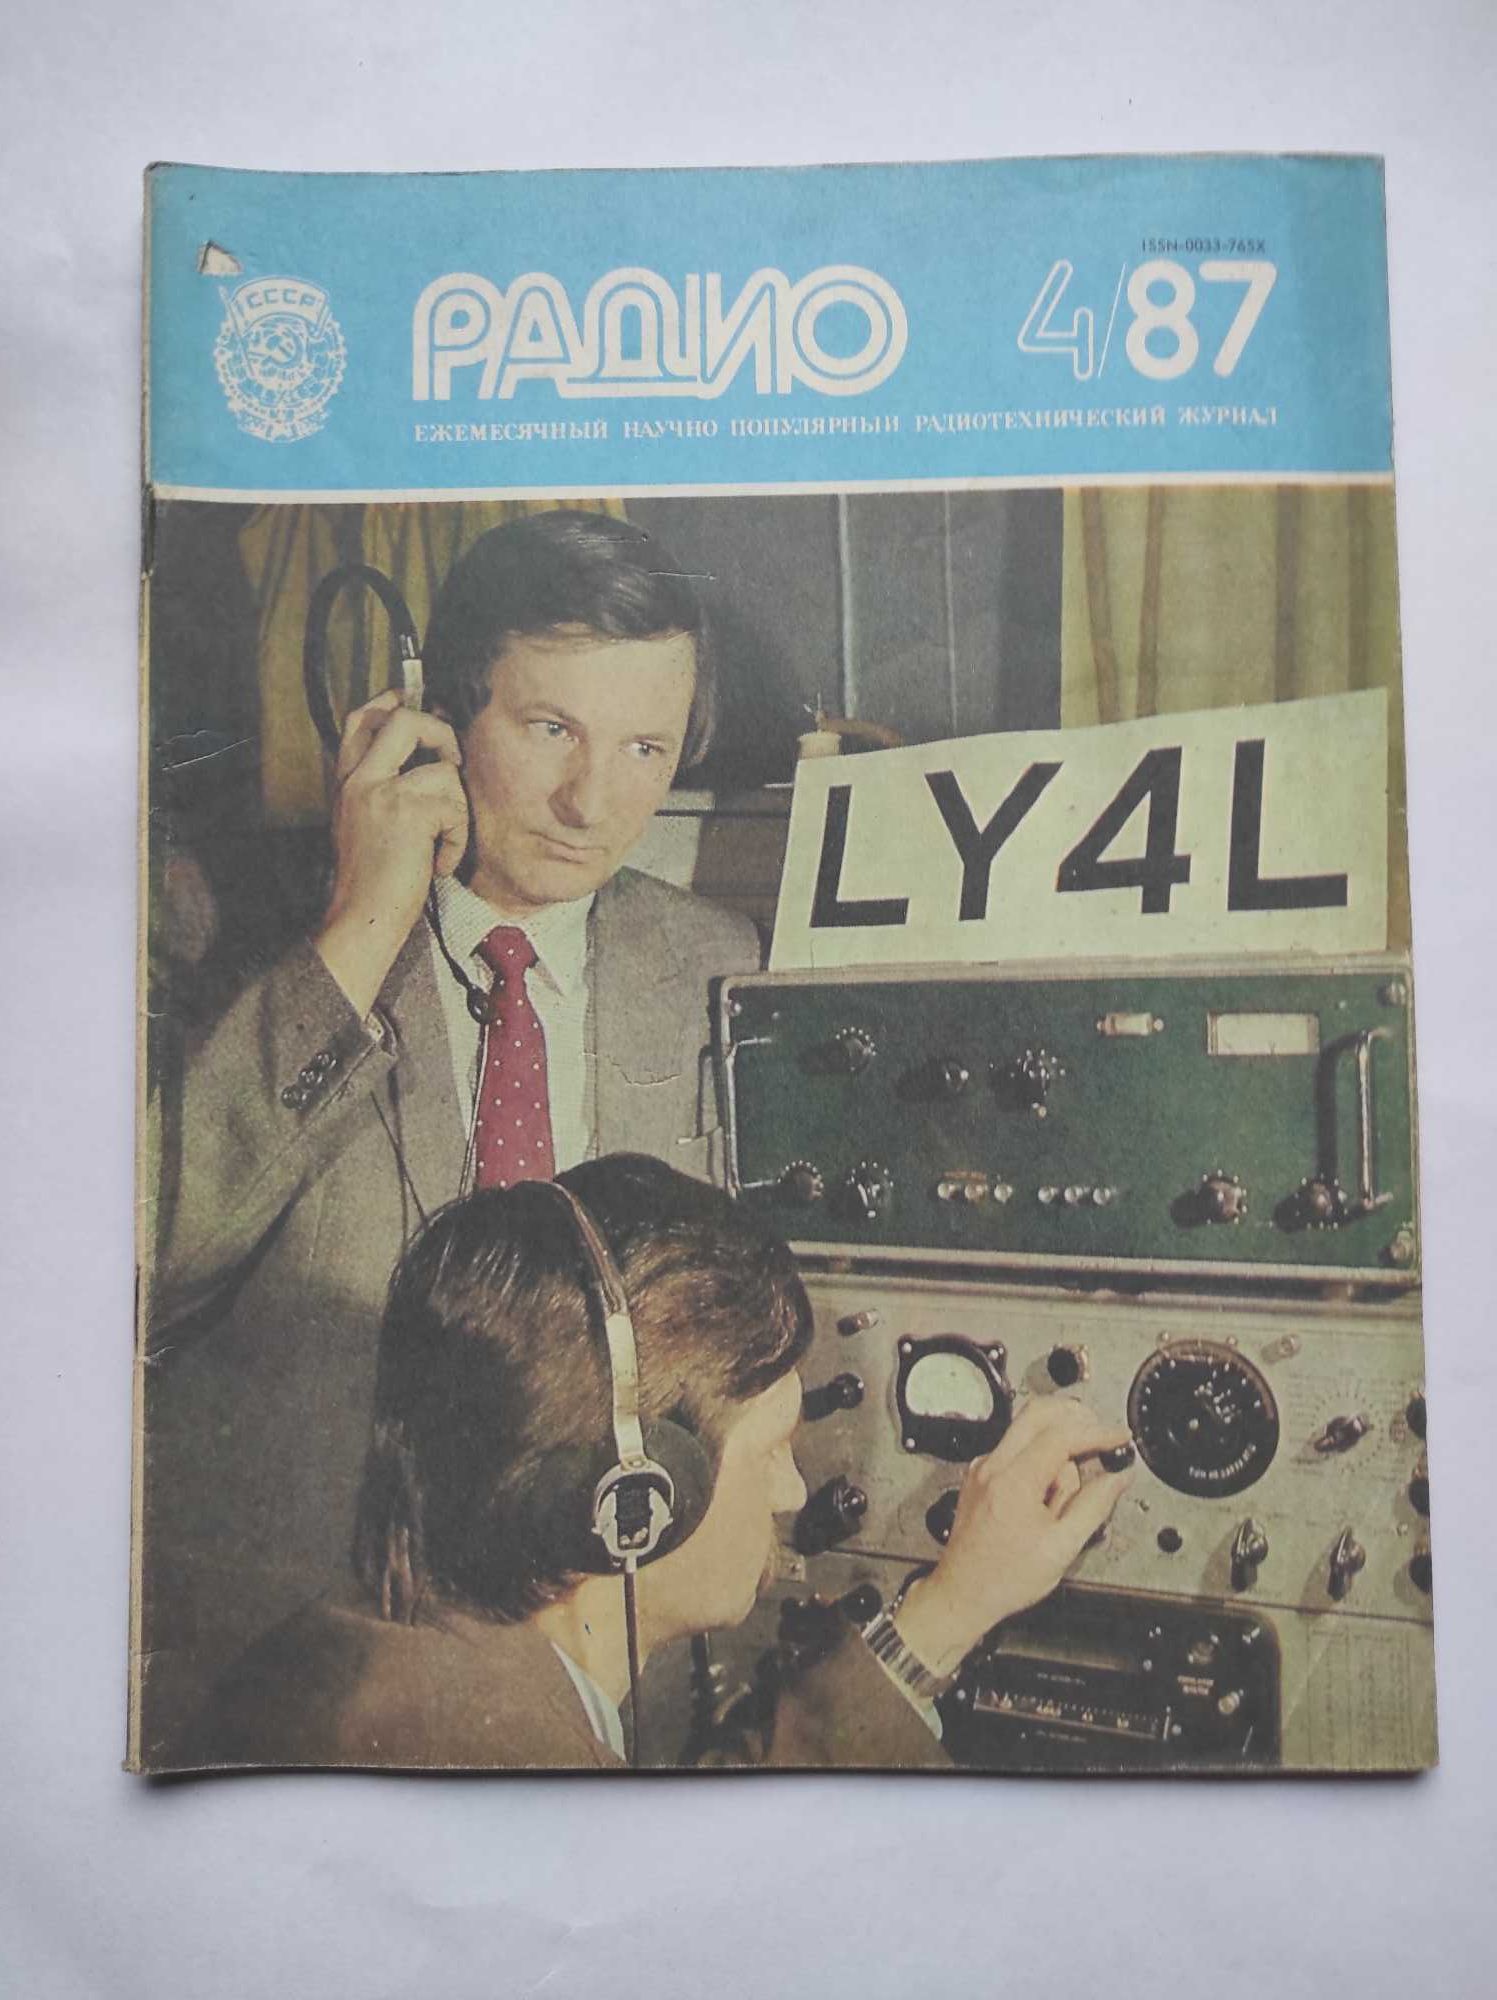 Czasopismo (rosyjskojęzyczne): RADIO 4/87